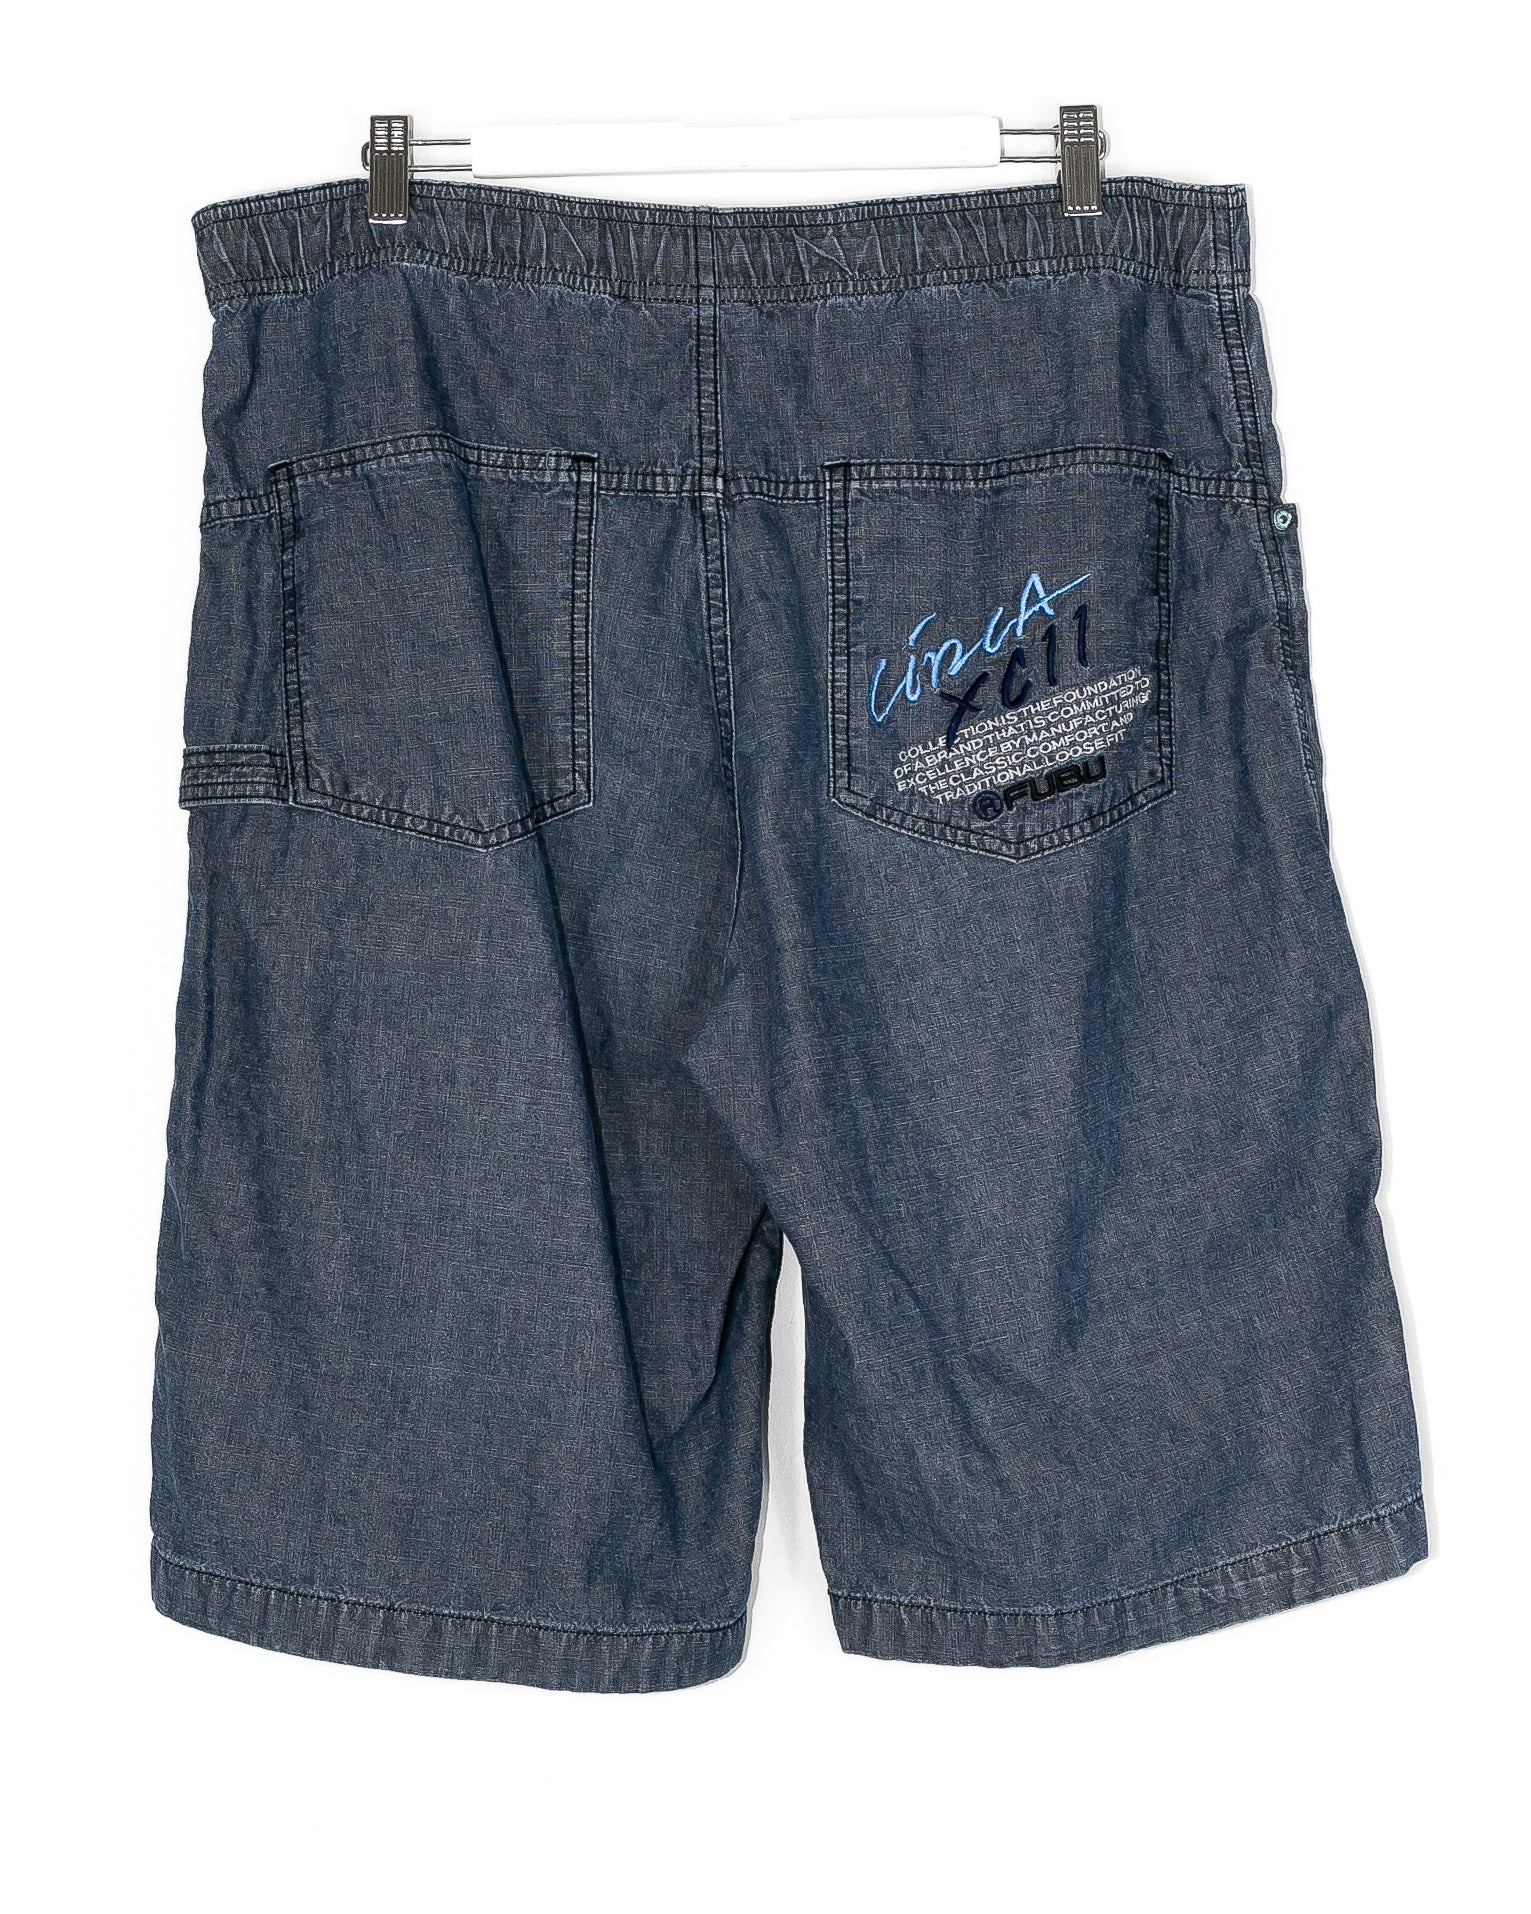 Vintage Fubu Jean Shorts / Jorts (36-38)